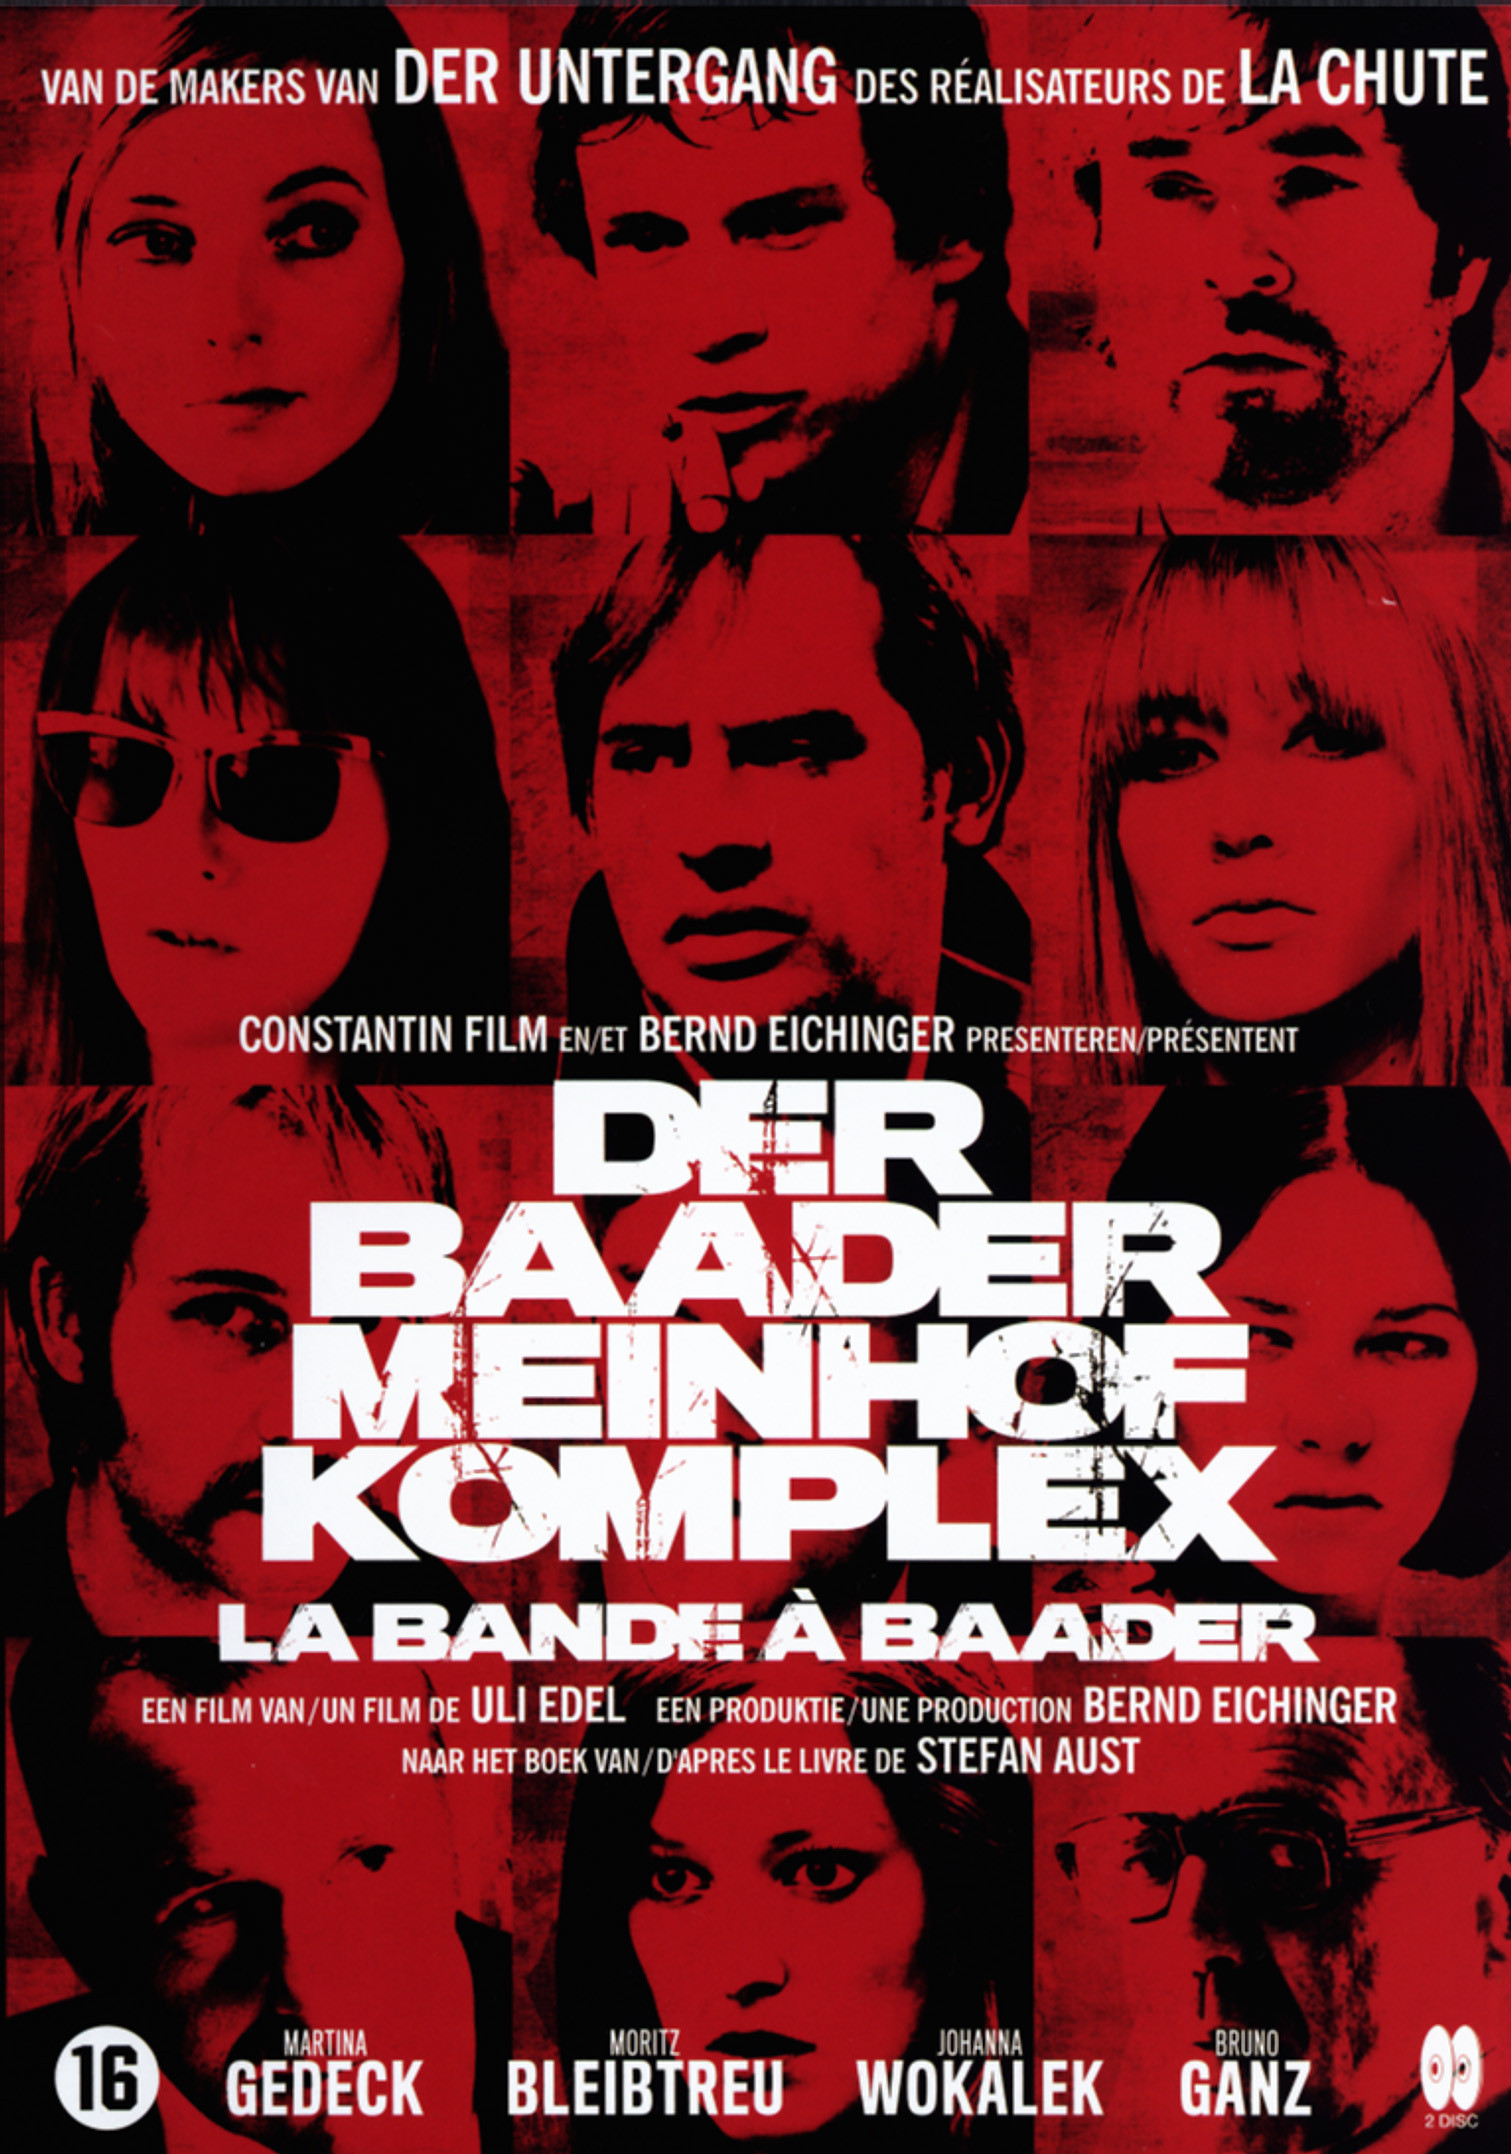 The Baader Meinhof Complex #24